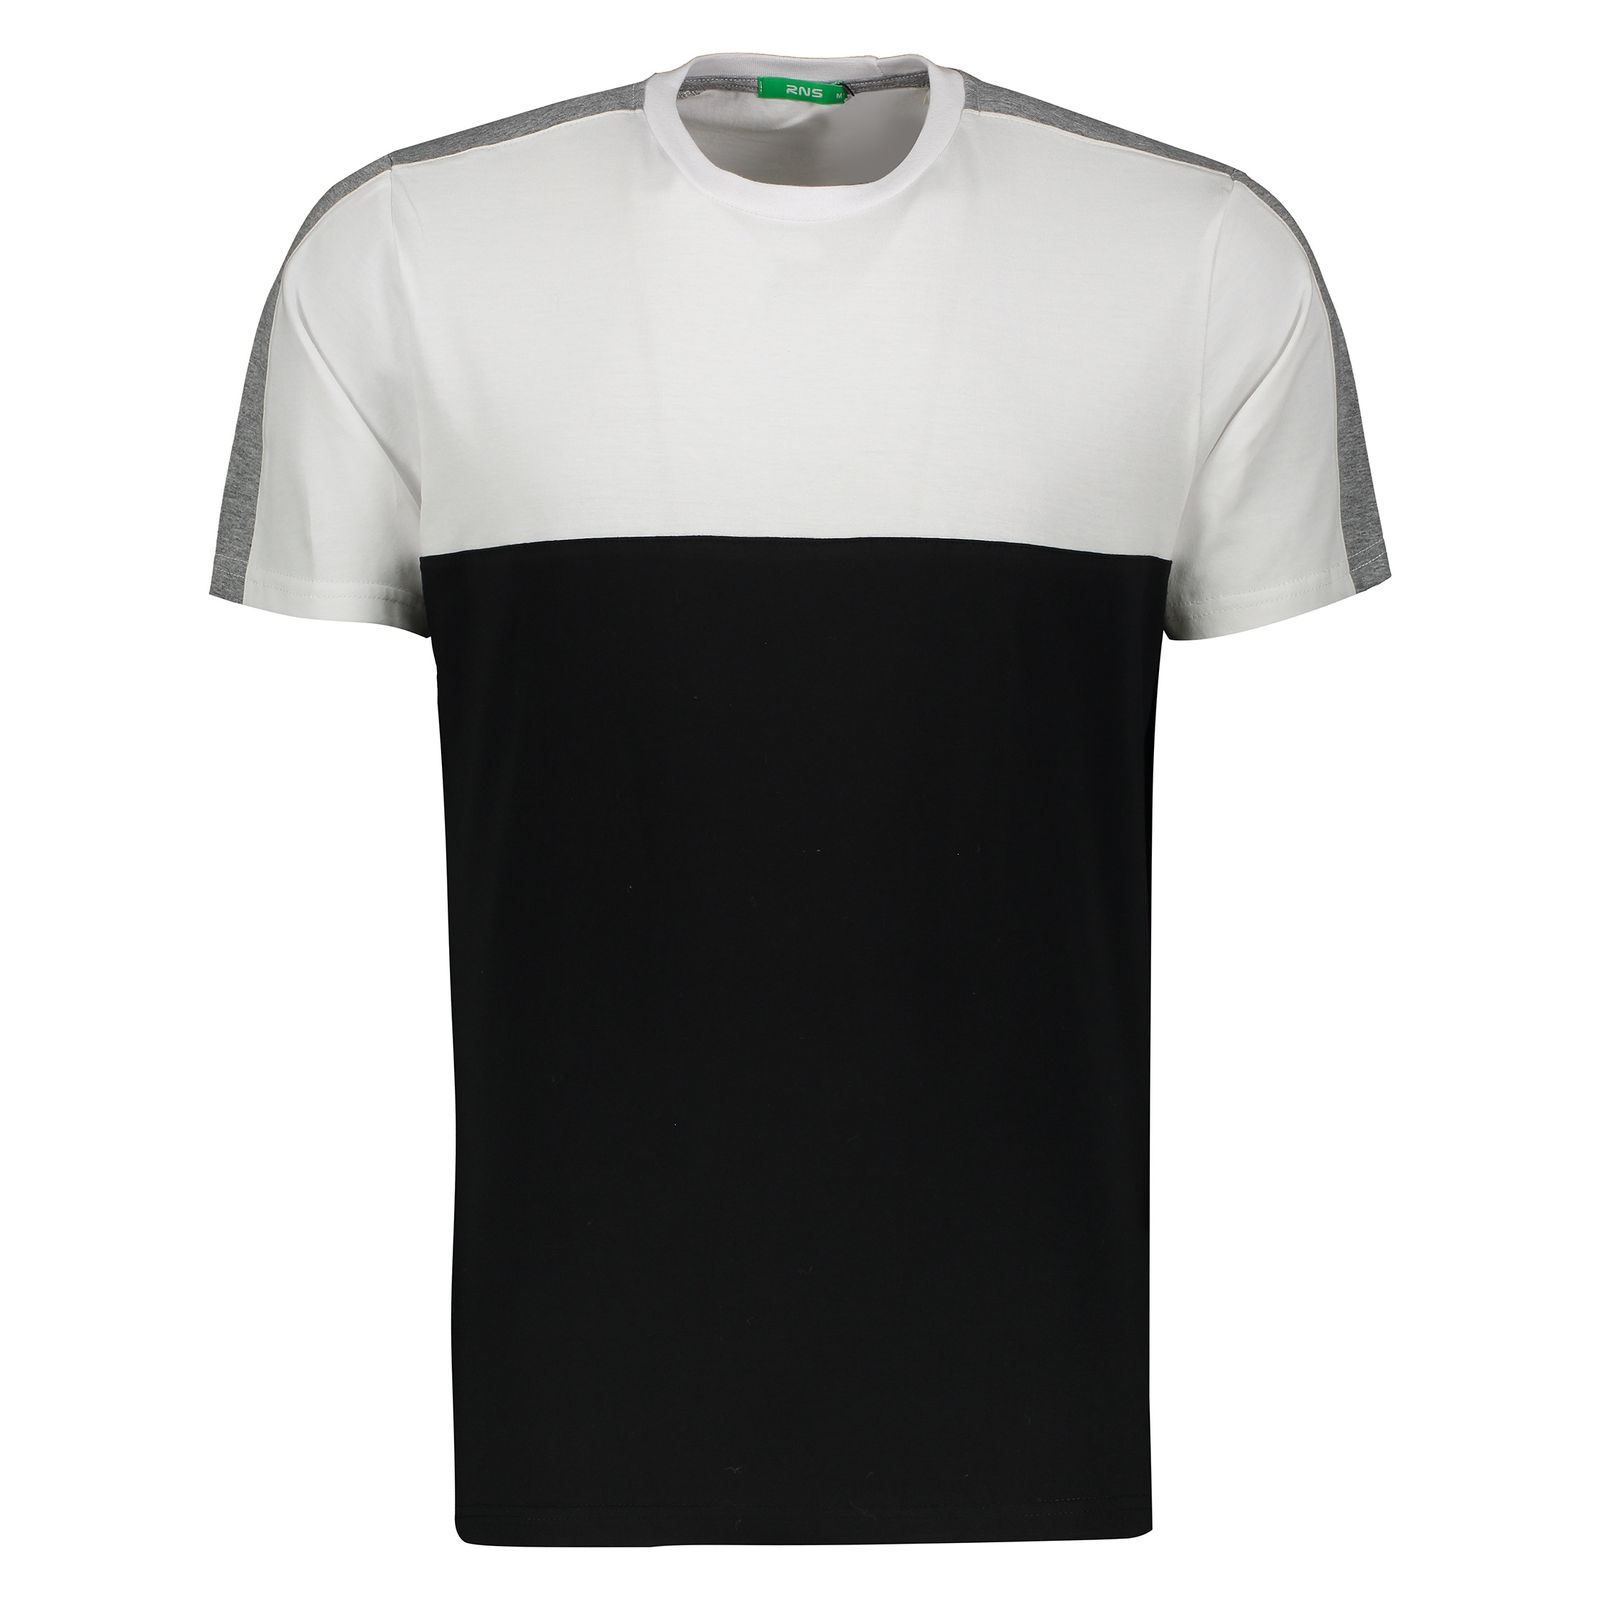 تی شرت مردانه آر ان اس مدل 1131109-01 - سفید - 2